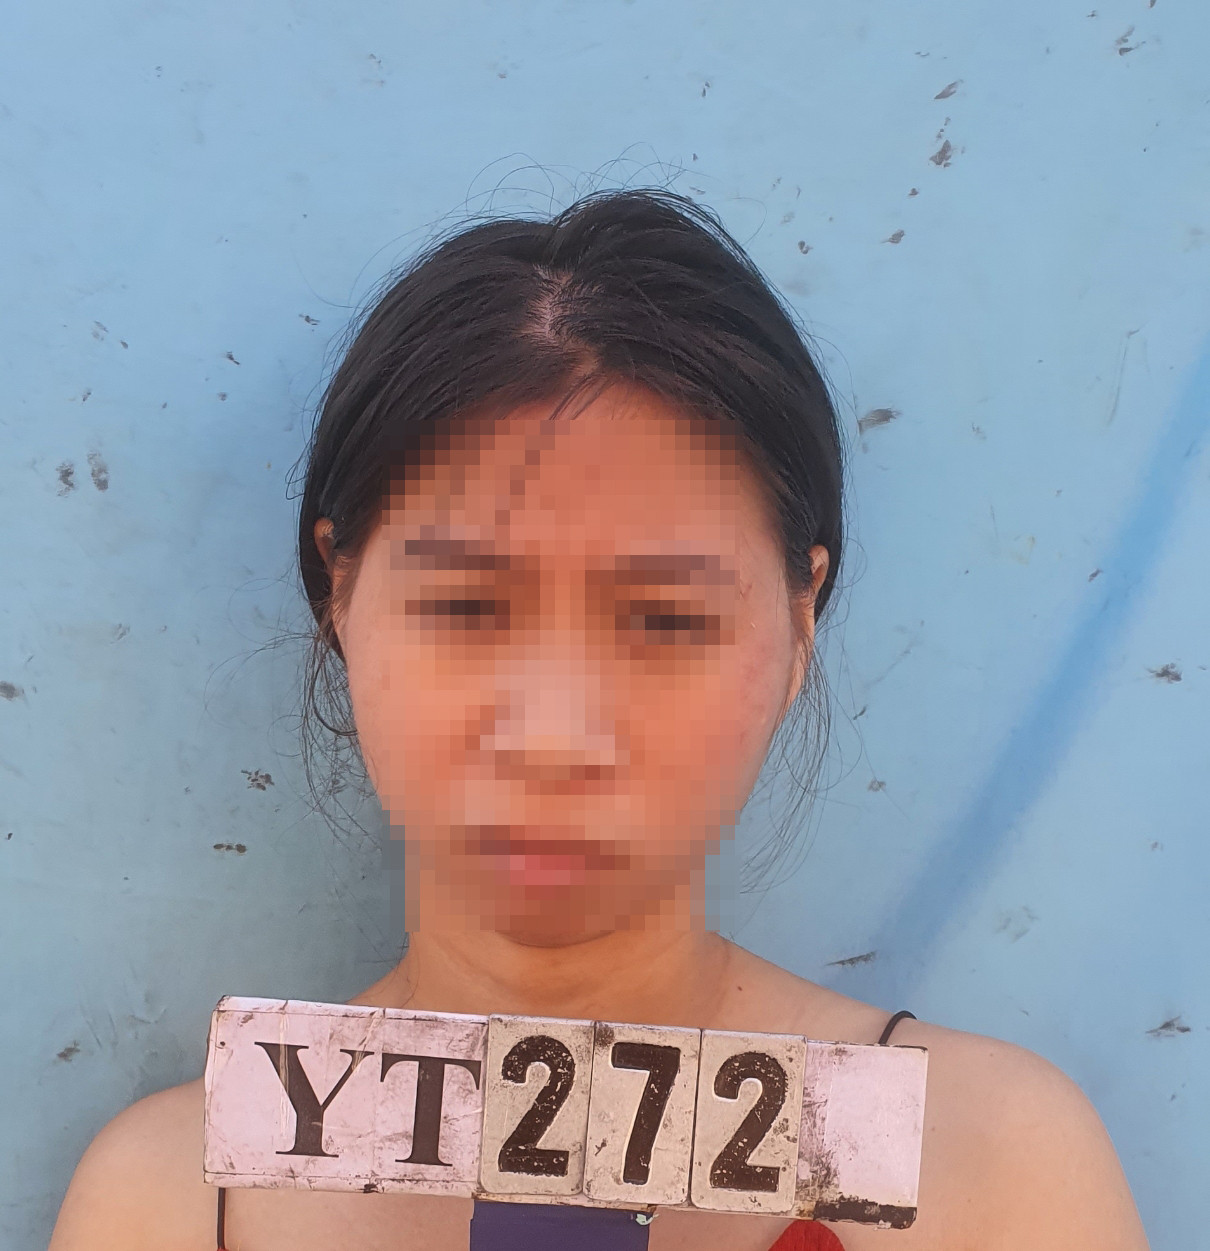 Đối tượng Nguyễn Thị Ngọc, nhân viên lễ tân nhà nghỉ X5 bị tạm giữ hình sự để điều tra. Ảnh: Công an cung cấp